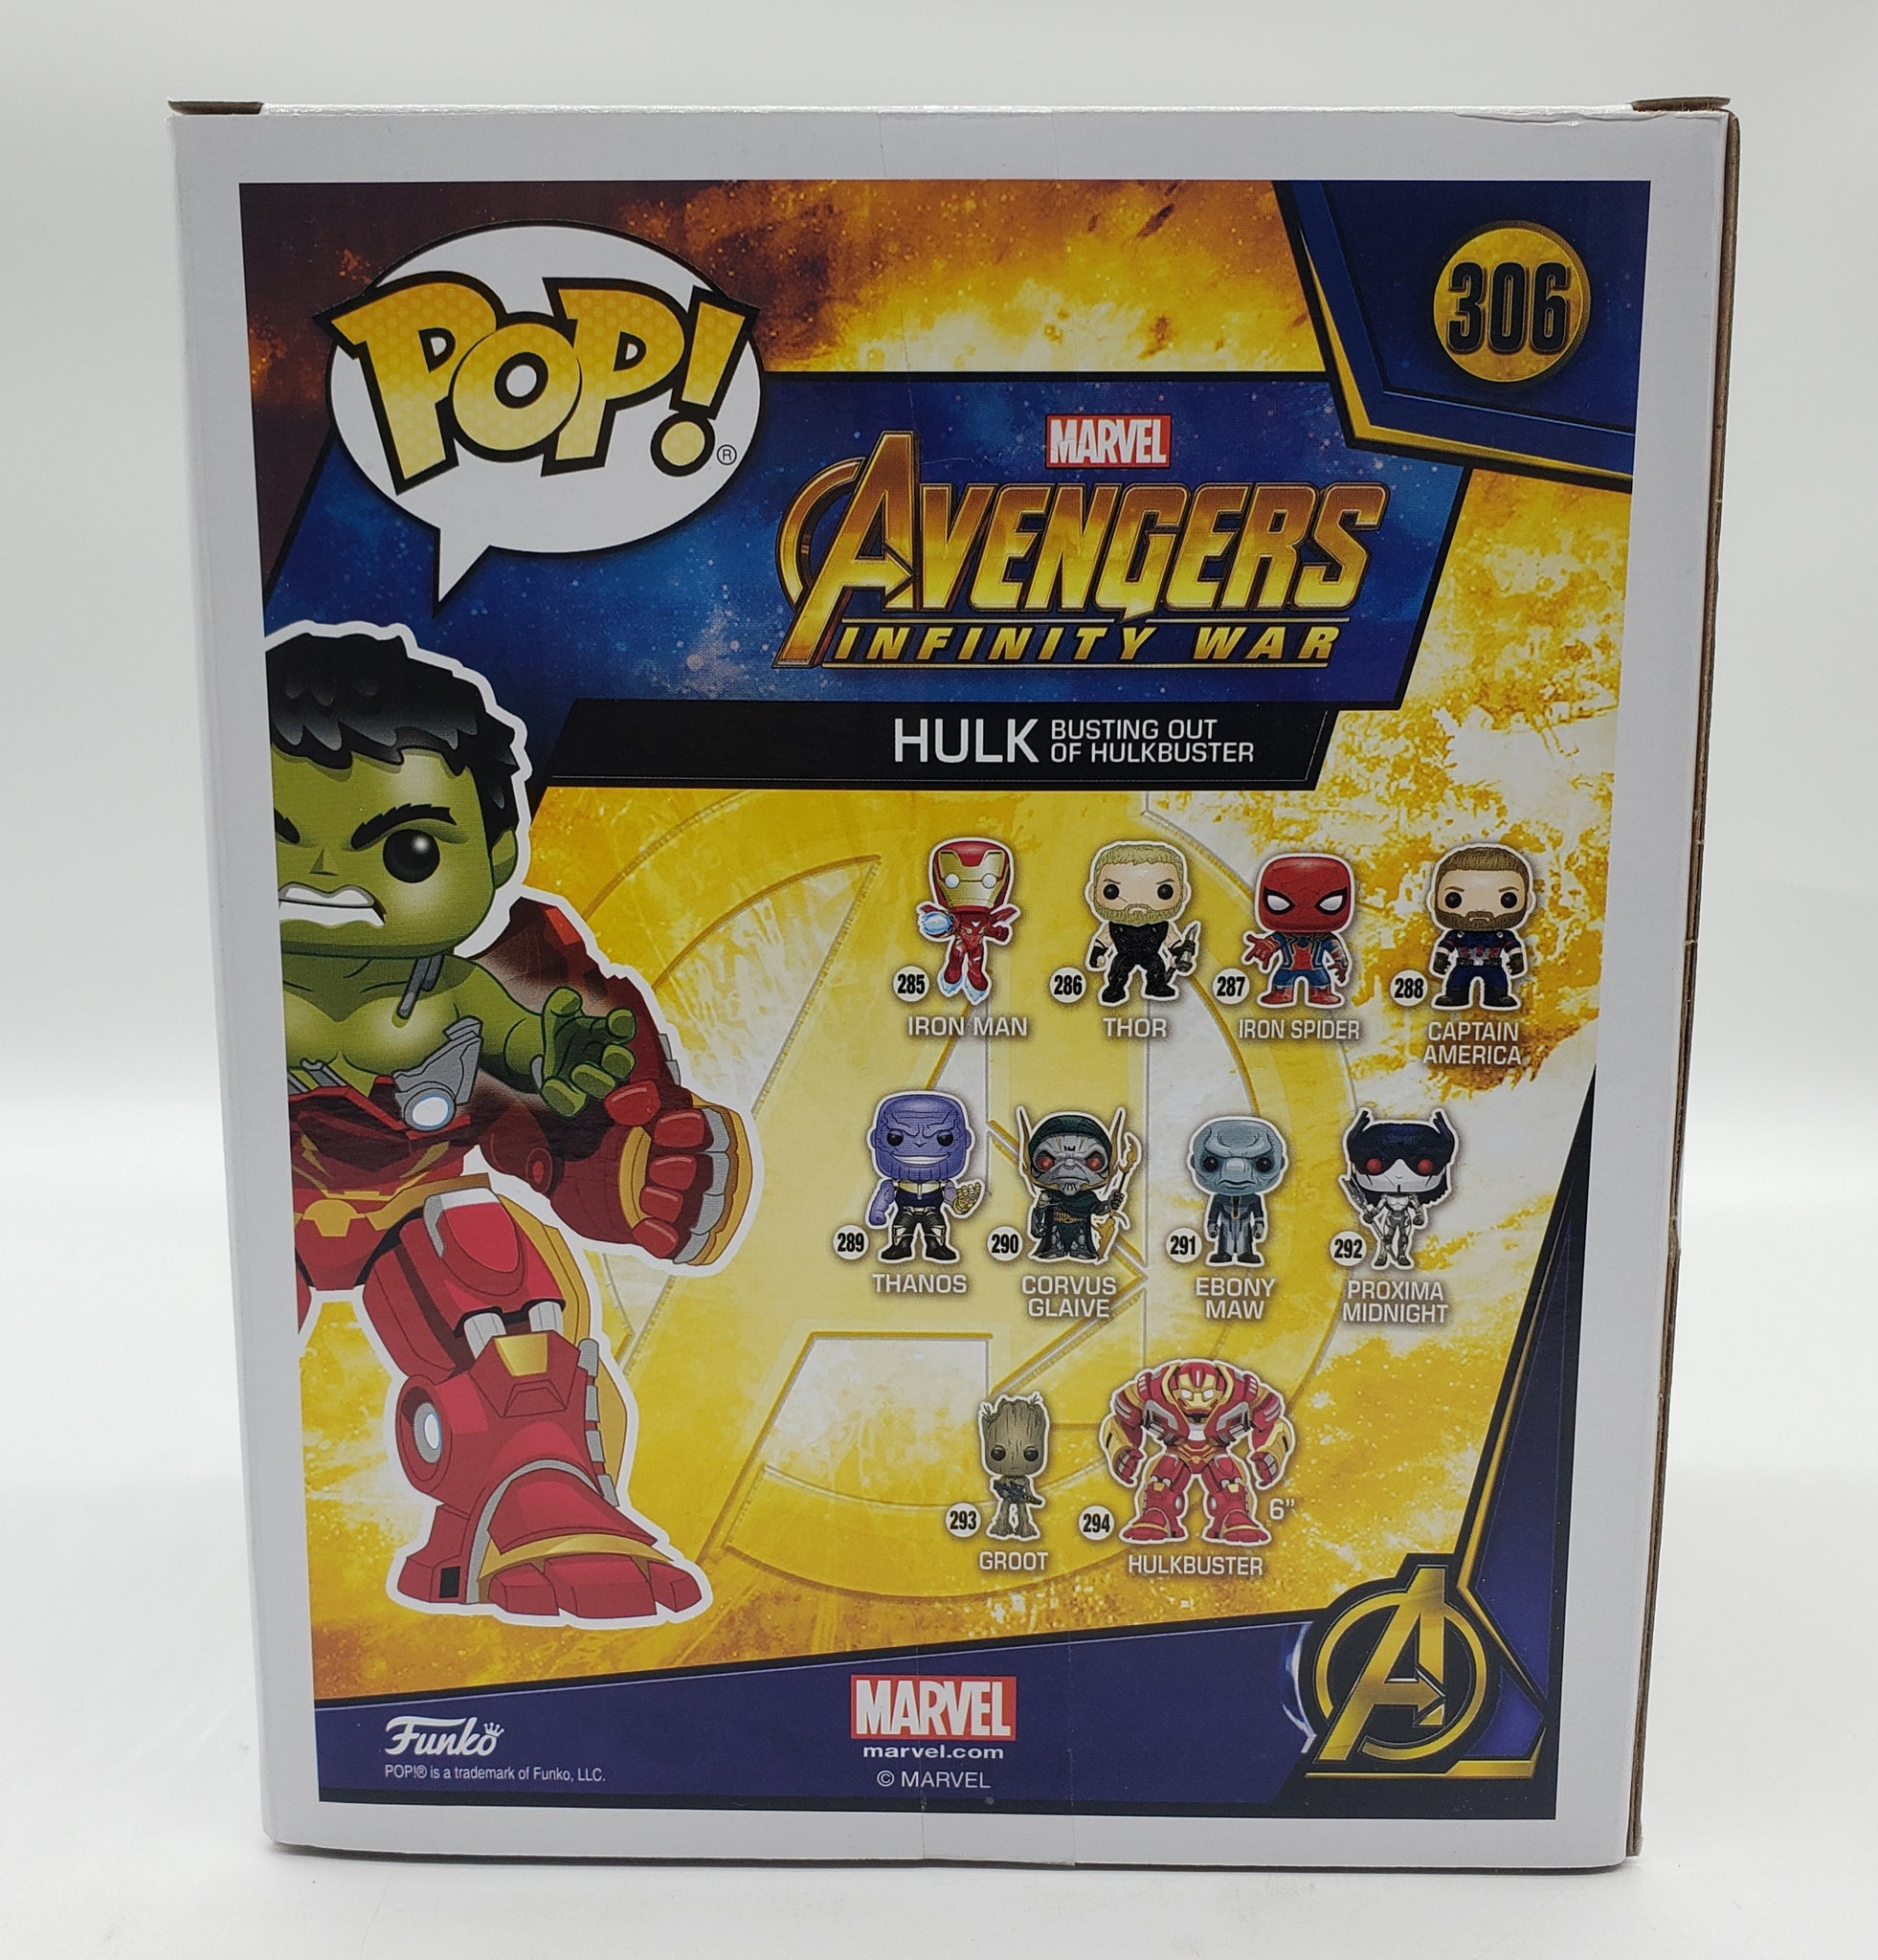 Funko Pop! Marvel Avengers: Infinity War GameStop Exclusive 6-inch